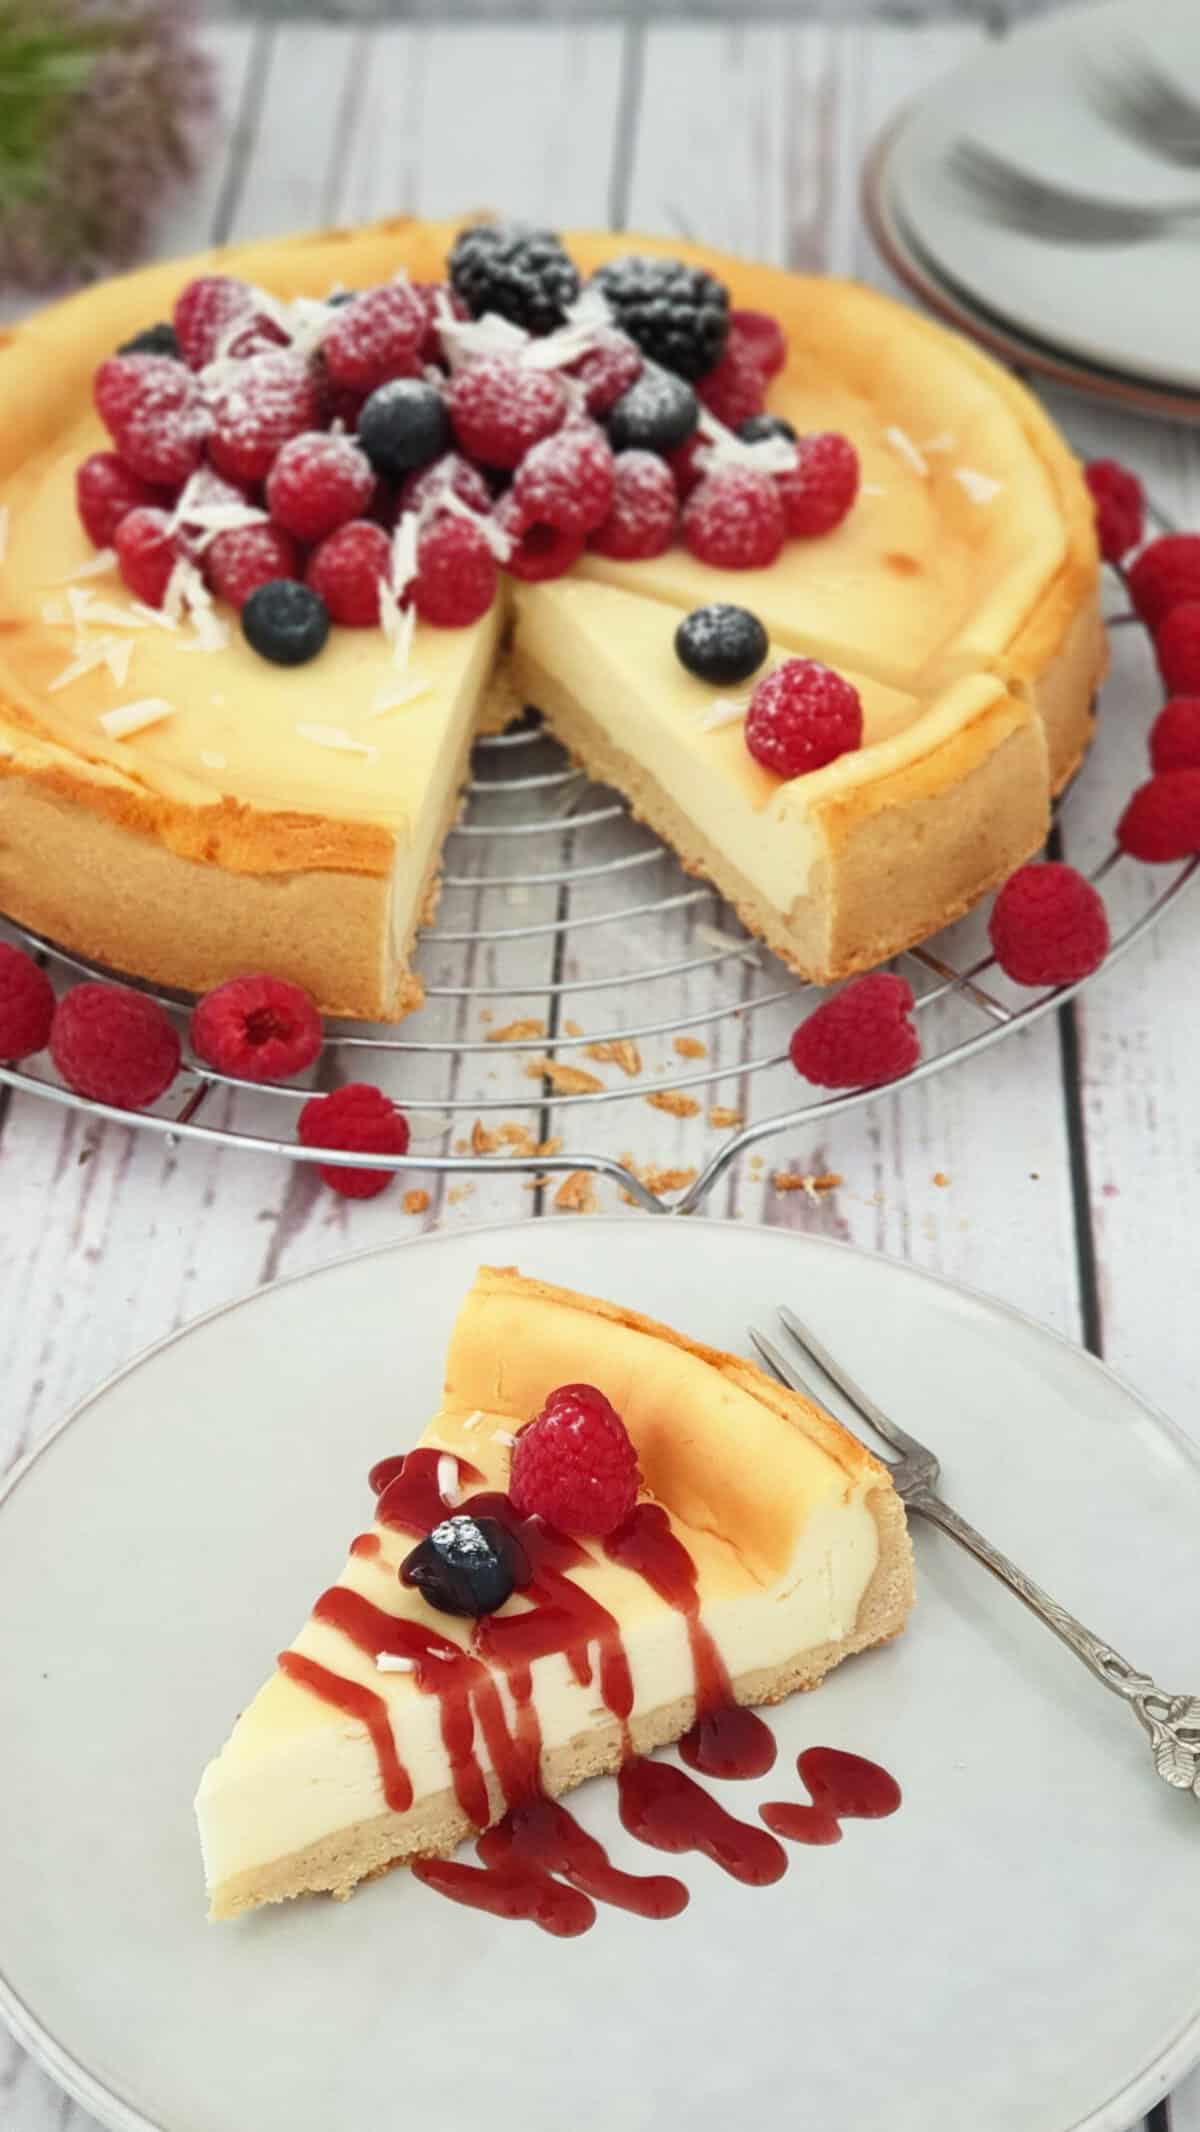 Auf einem hellen Teller ein Stück Cheesecake mit Fürchten und Beeren. Im Hintergrund ein Käsekuchen auf einem Kuchenrost.